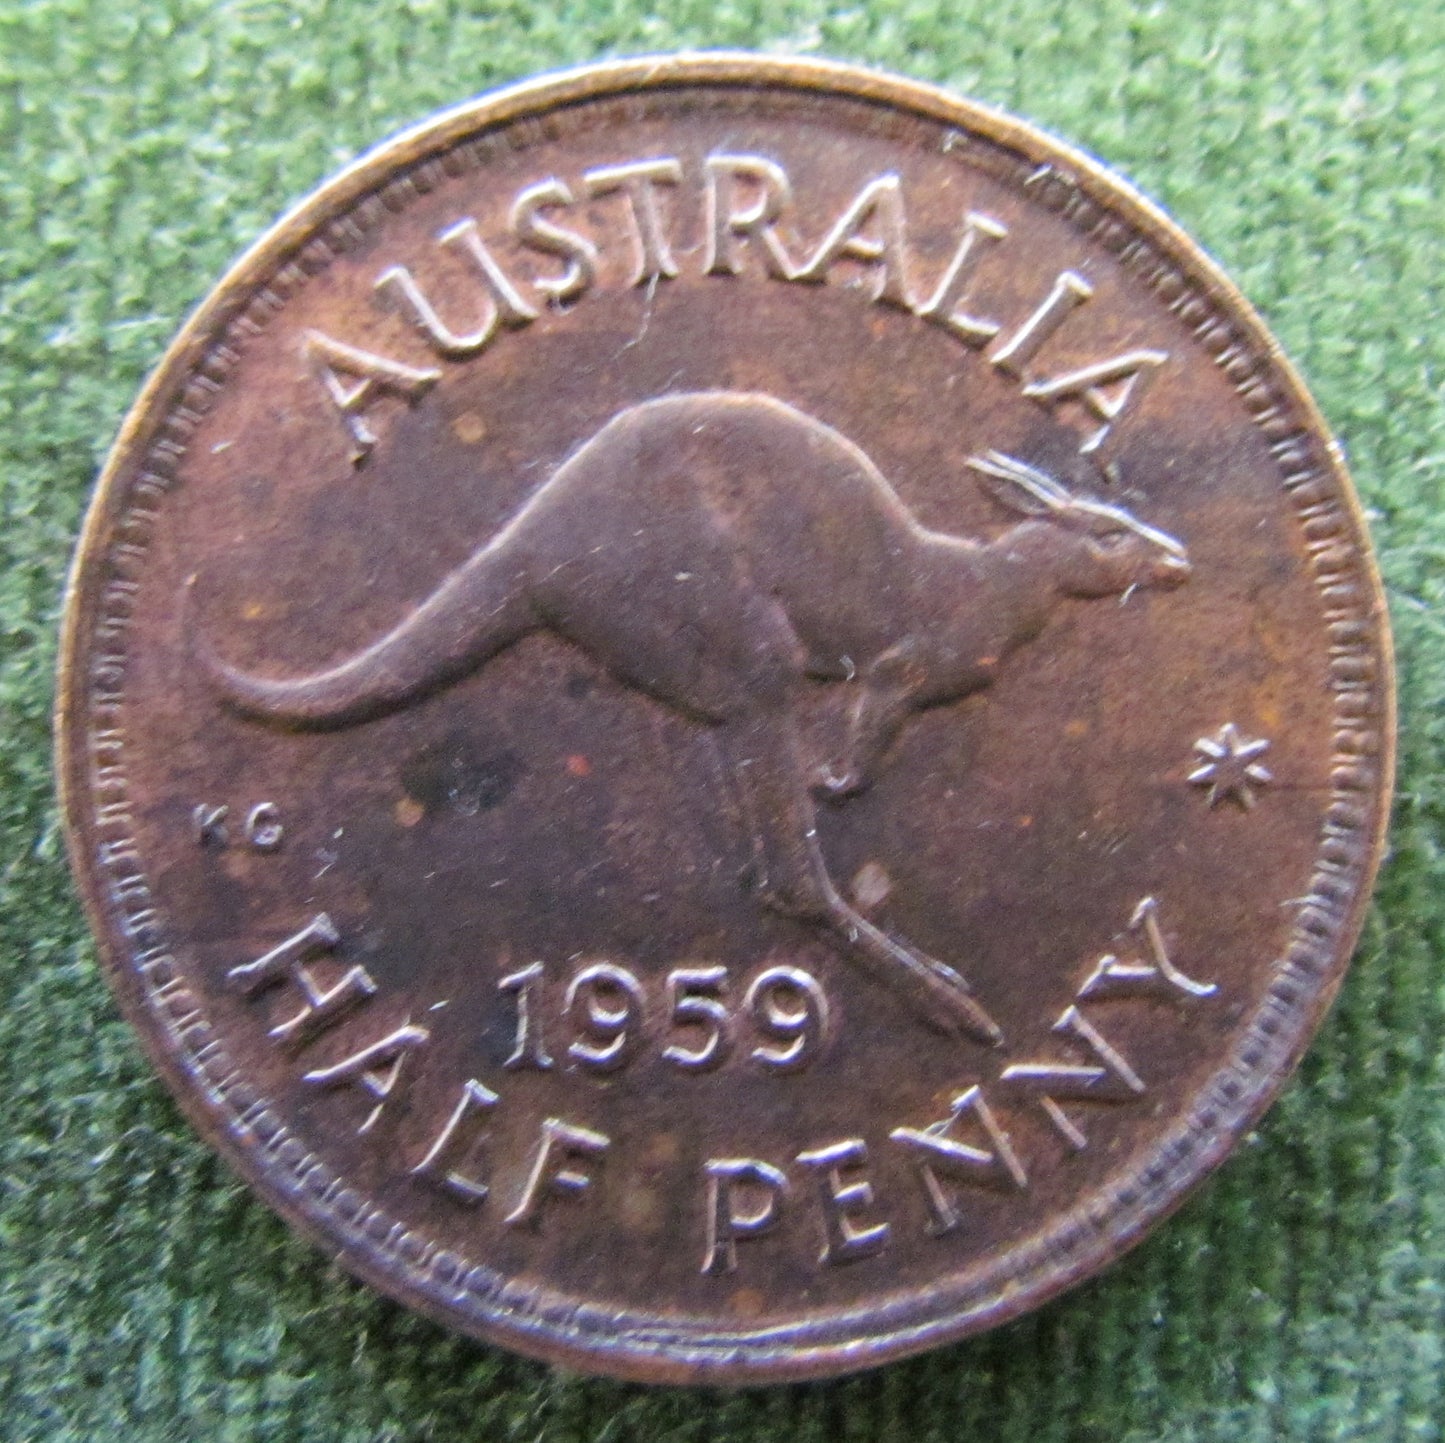 Australian 1959 1/2d Half Penny Queen Elizabeth II Coin - High Grade